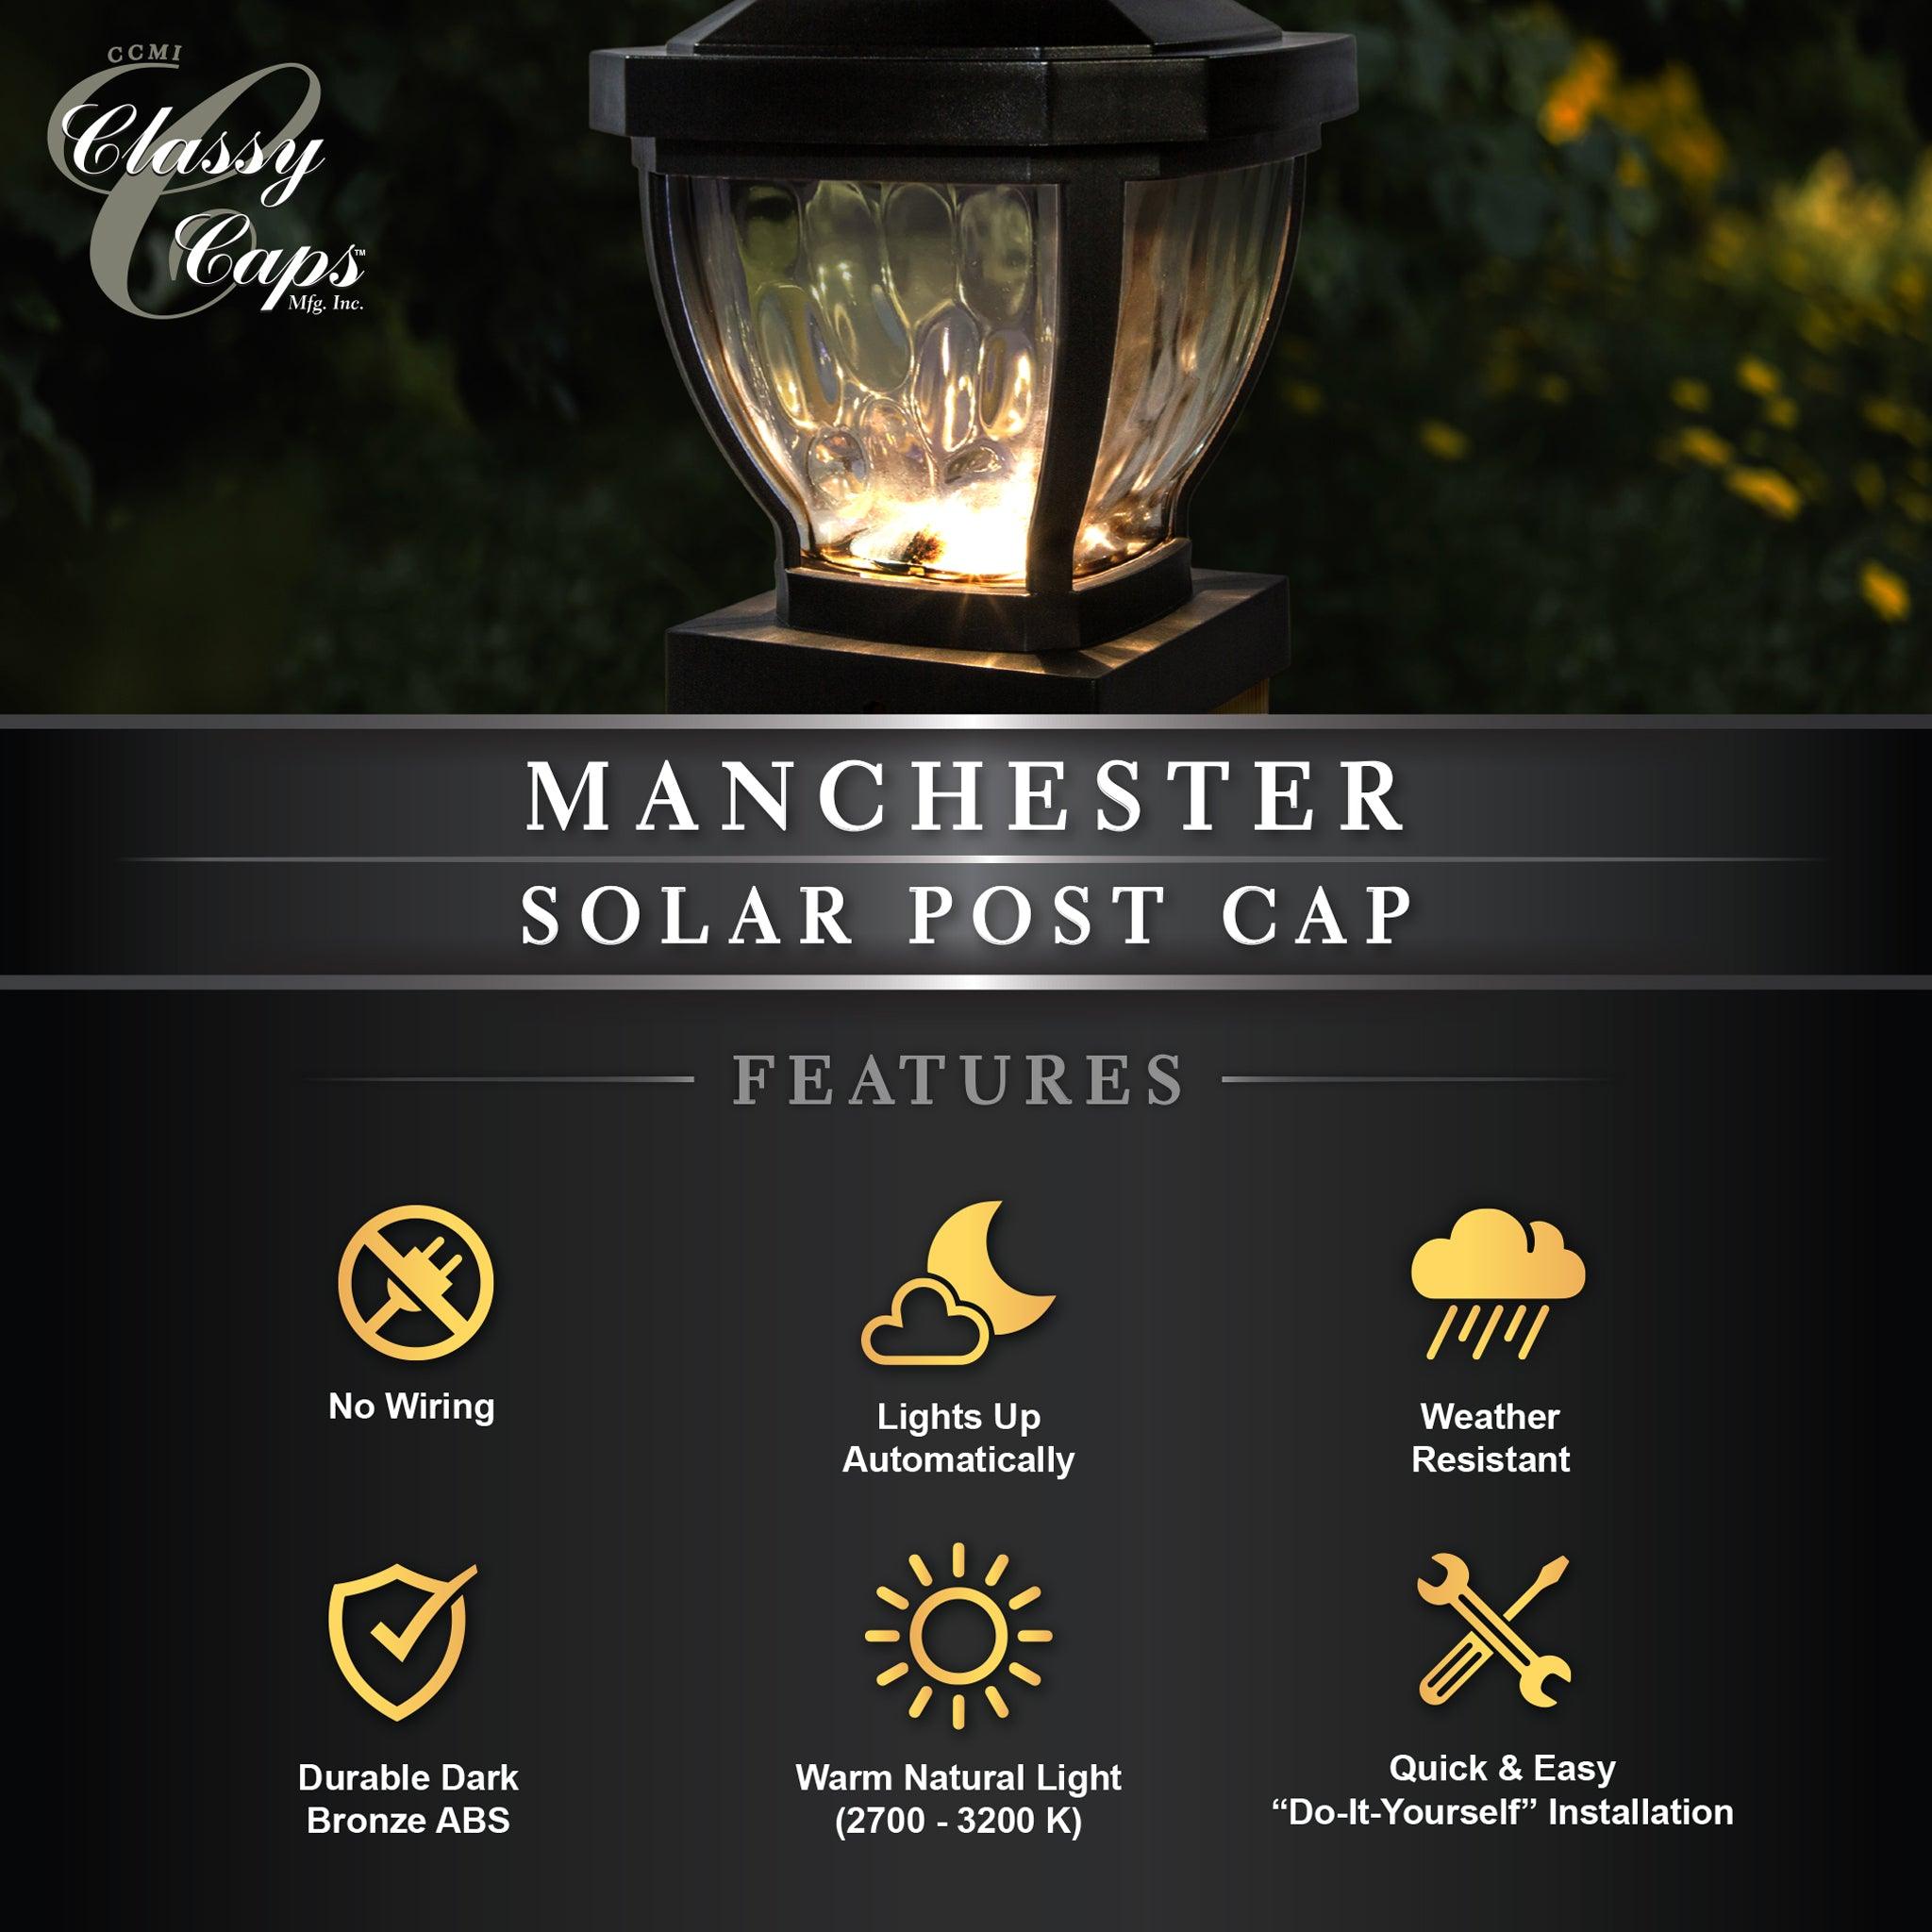 Manchester Solar Post Cap - Dark Bronze - Classy Caps Mfg. Inc.